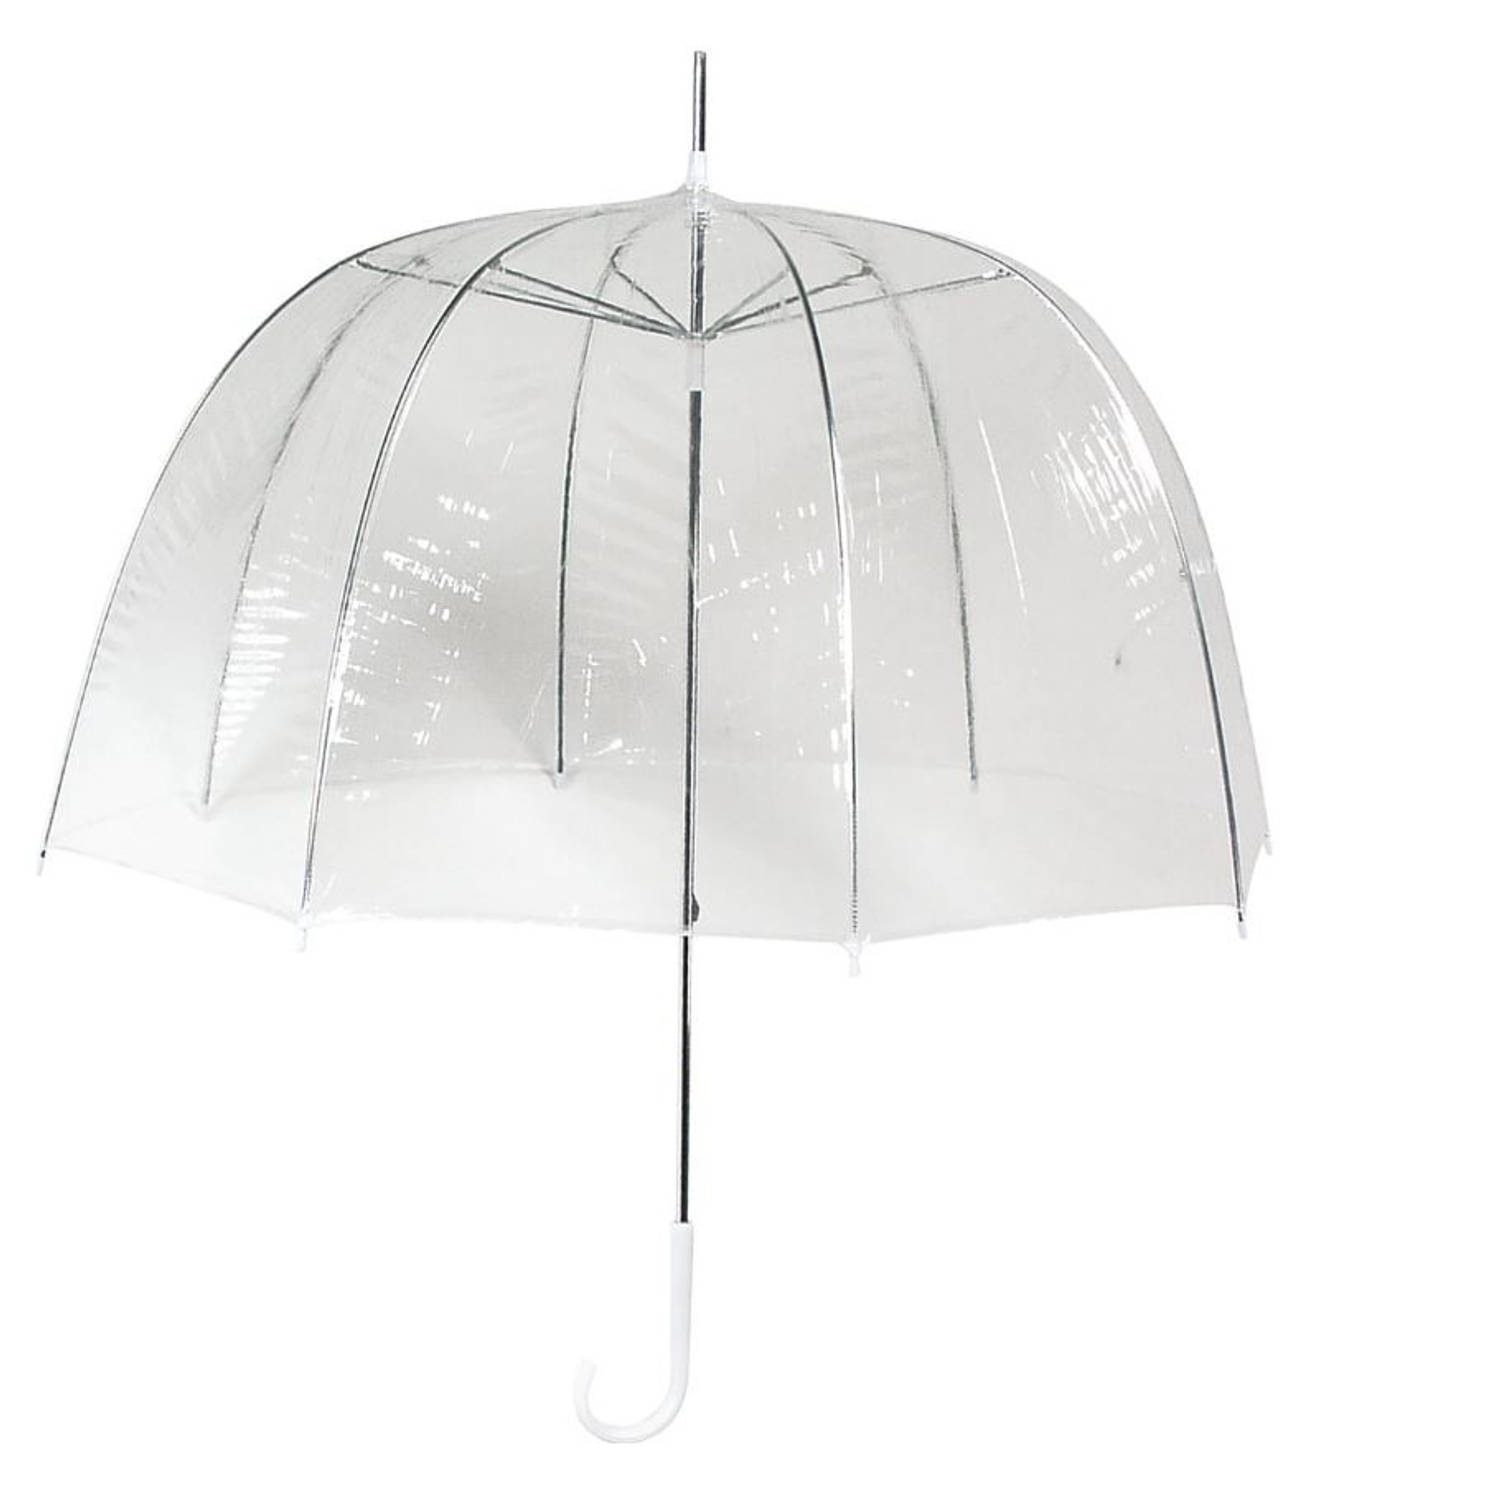 Consulaat Edelsteen Leerling Transparant plastic paraplu's 80 cm - doorzichtige paraplu - trouwparaplu -  bruidsparaplu - stijlvol - bruiloft - | Blokker